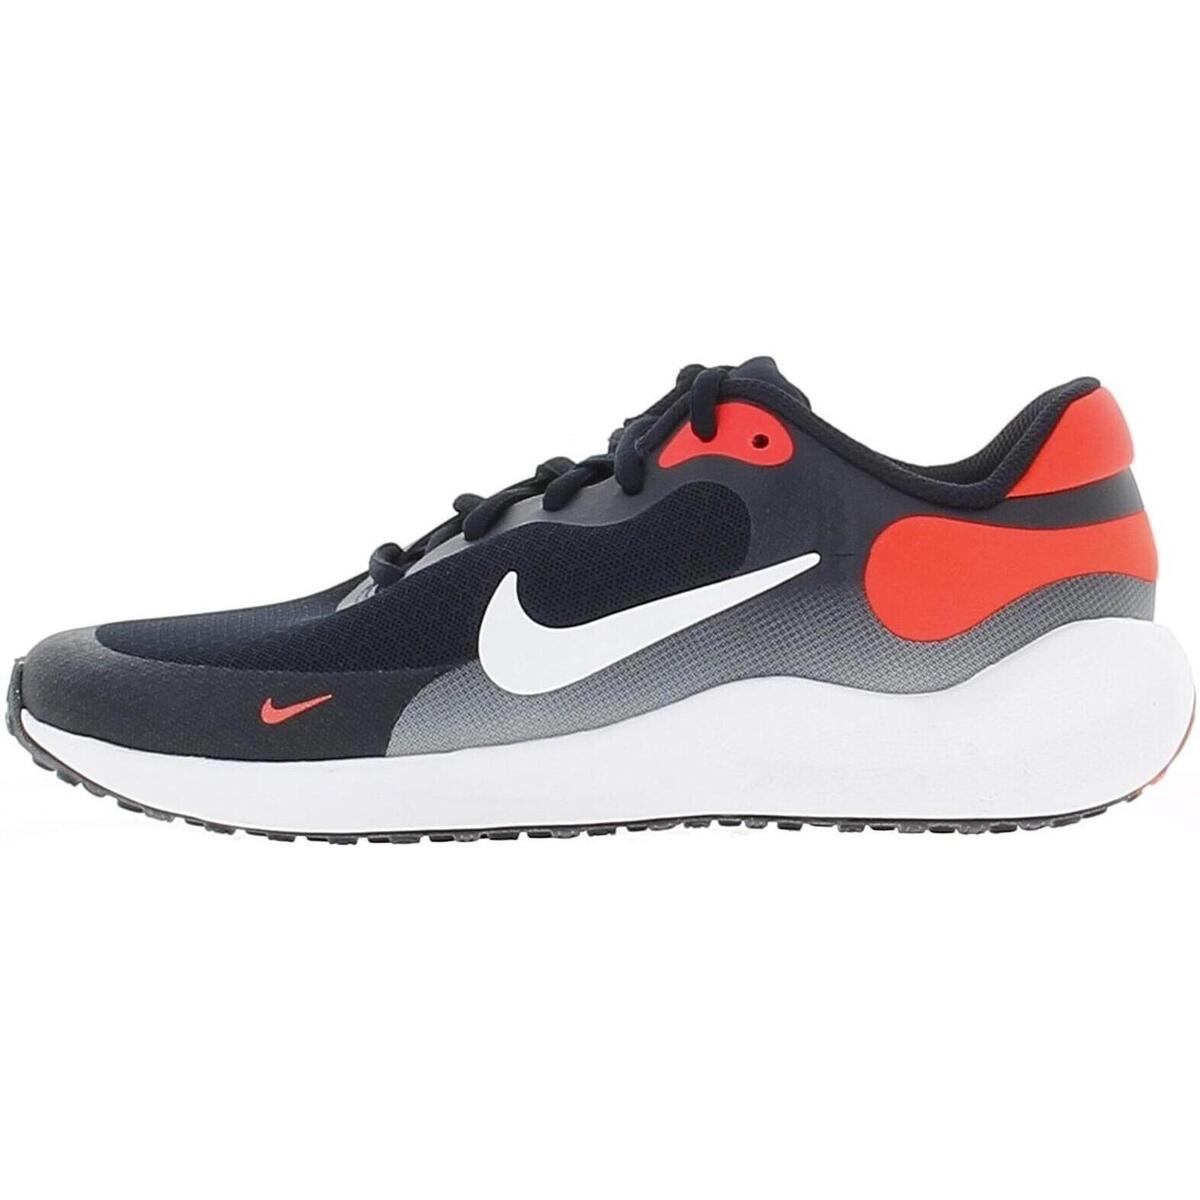 Chaussures de running Nike revolution 7  gs  27134841 1200 A